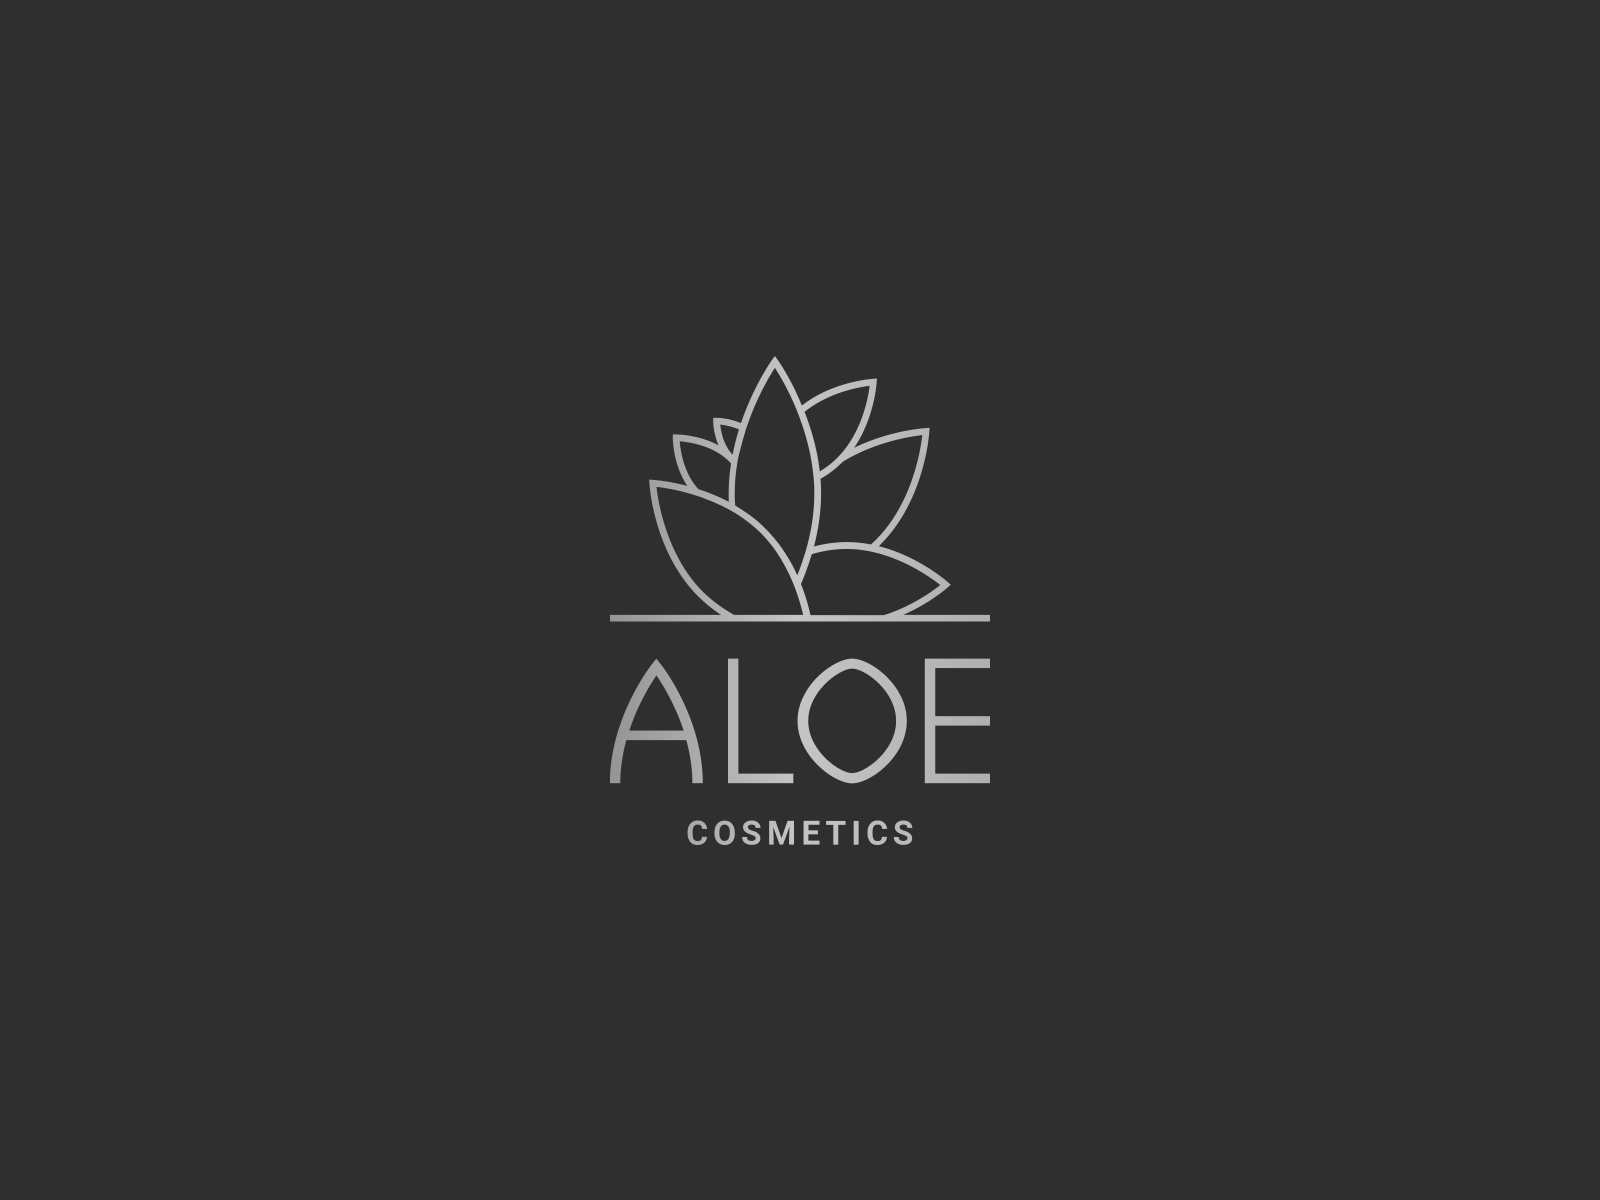 Aloe cosmetics logo by logochopper on Dribbble